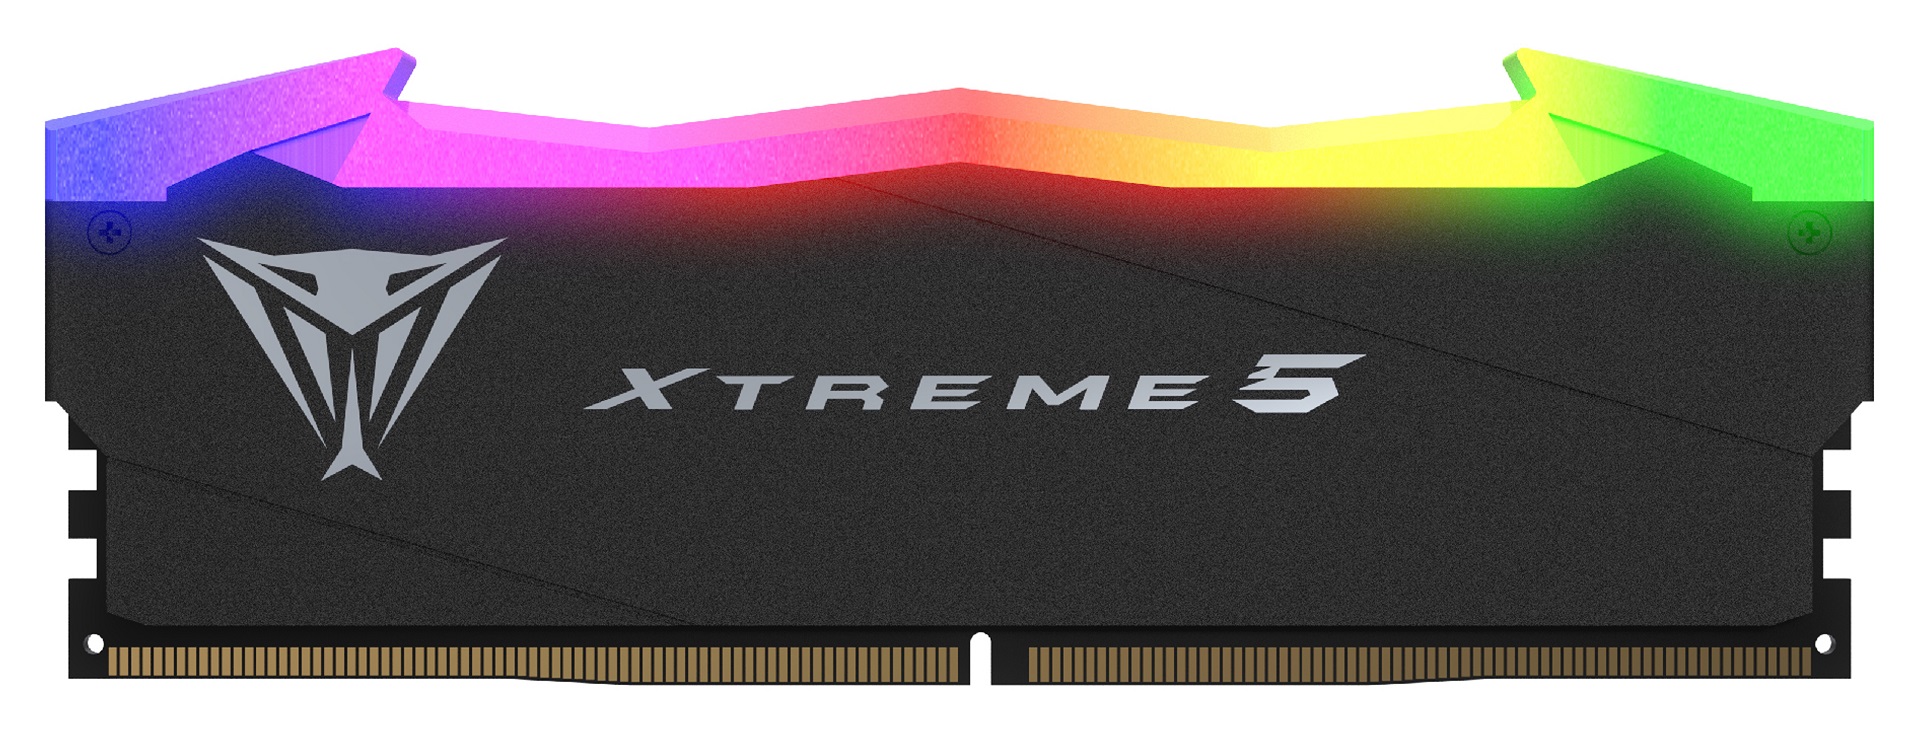 Test Patriot Viper Xtreme 5 2x16 GB 8000 MHz CL 38. Nowe wyzwanie dla płyt głównych